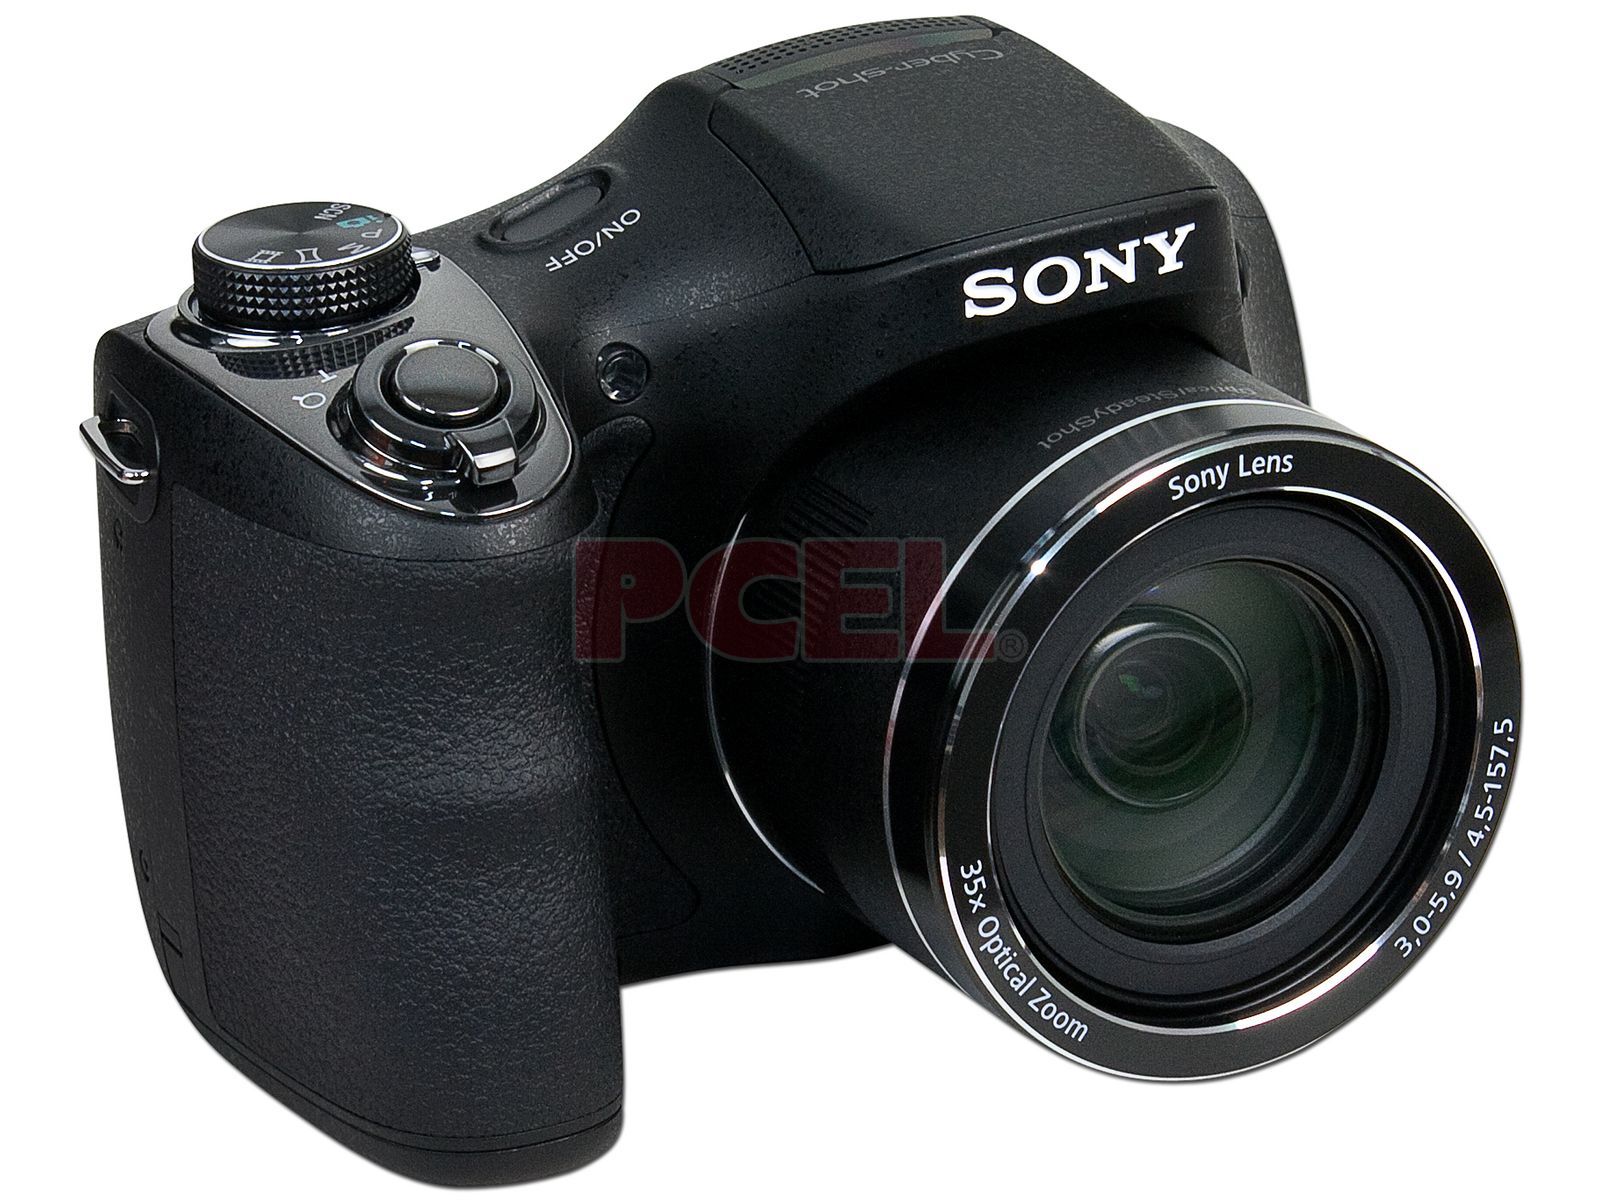 Las mejores ofertas en Sony Sony Cyber-shot cámaras digitales